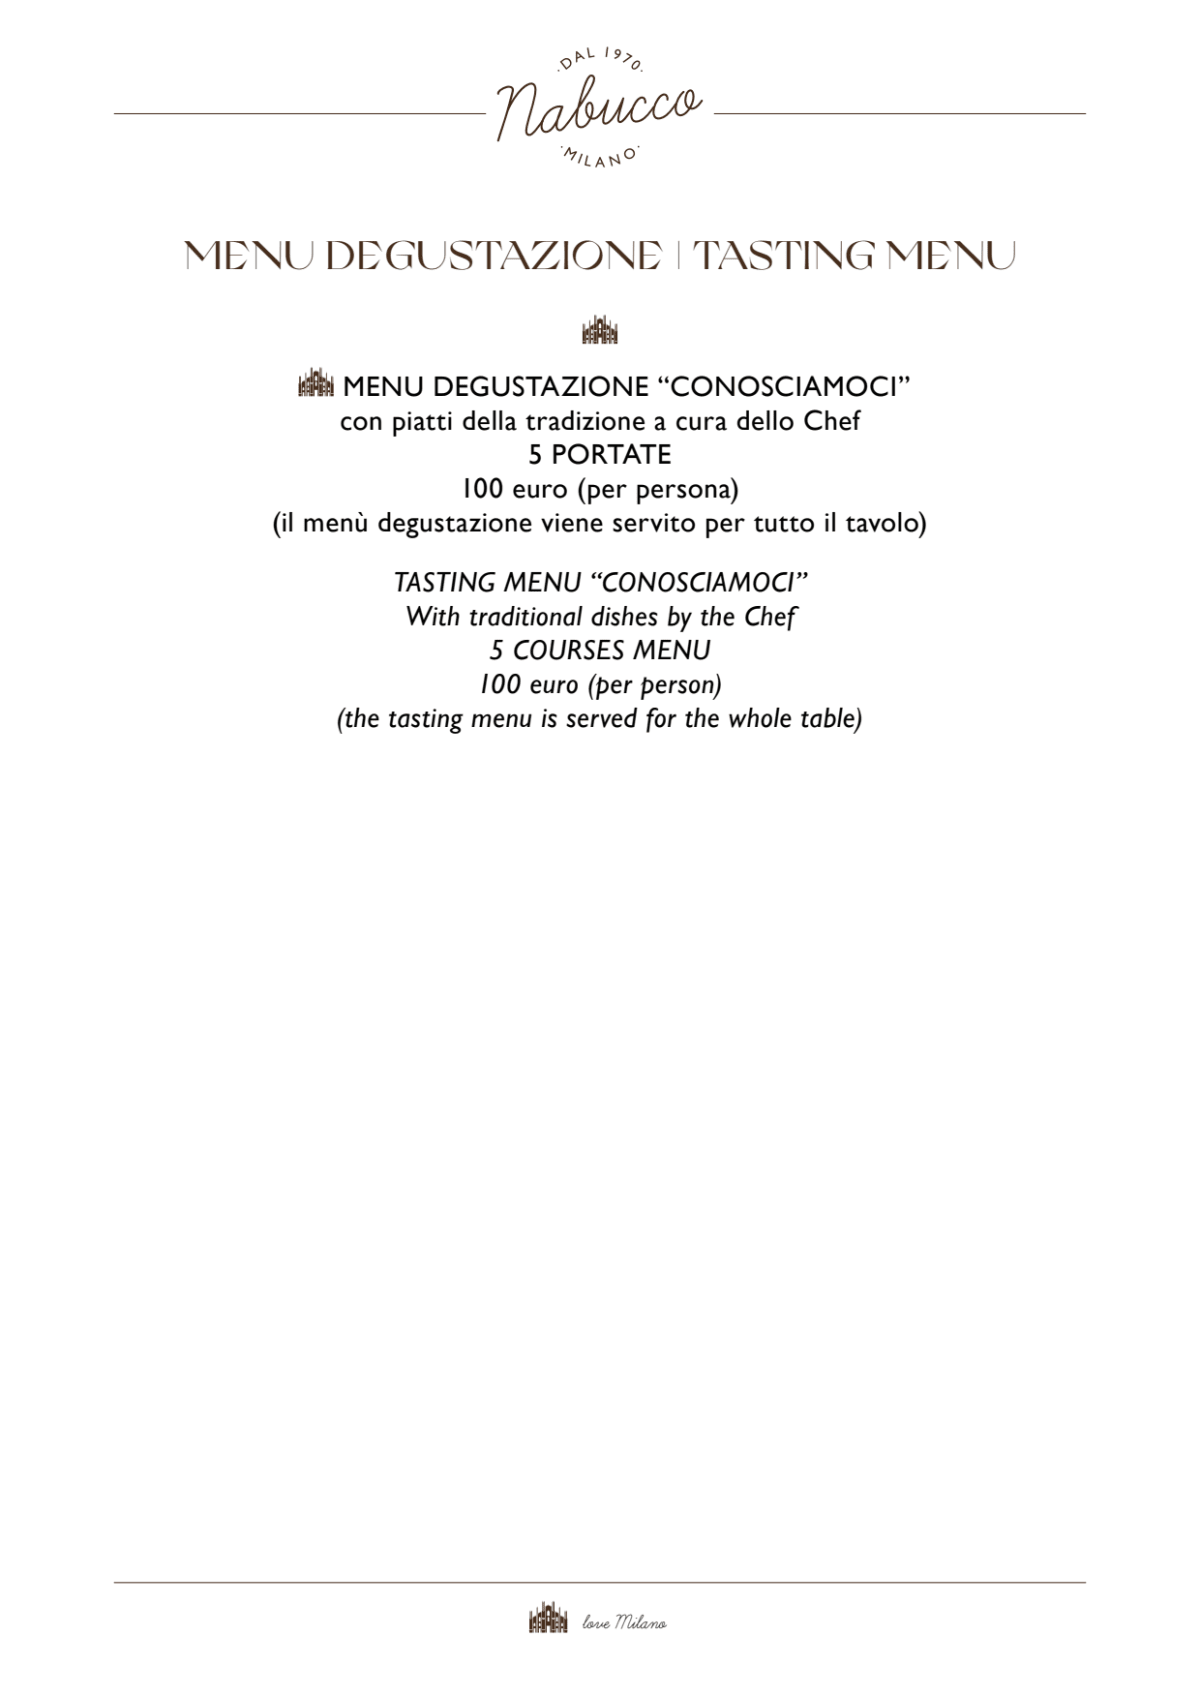 Ristorante Nabucco menu